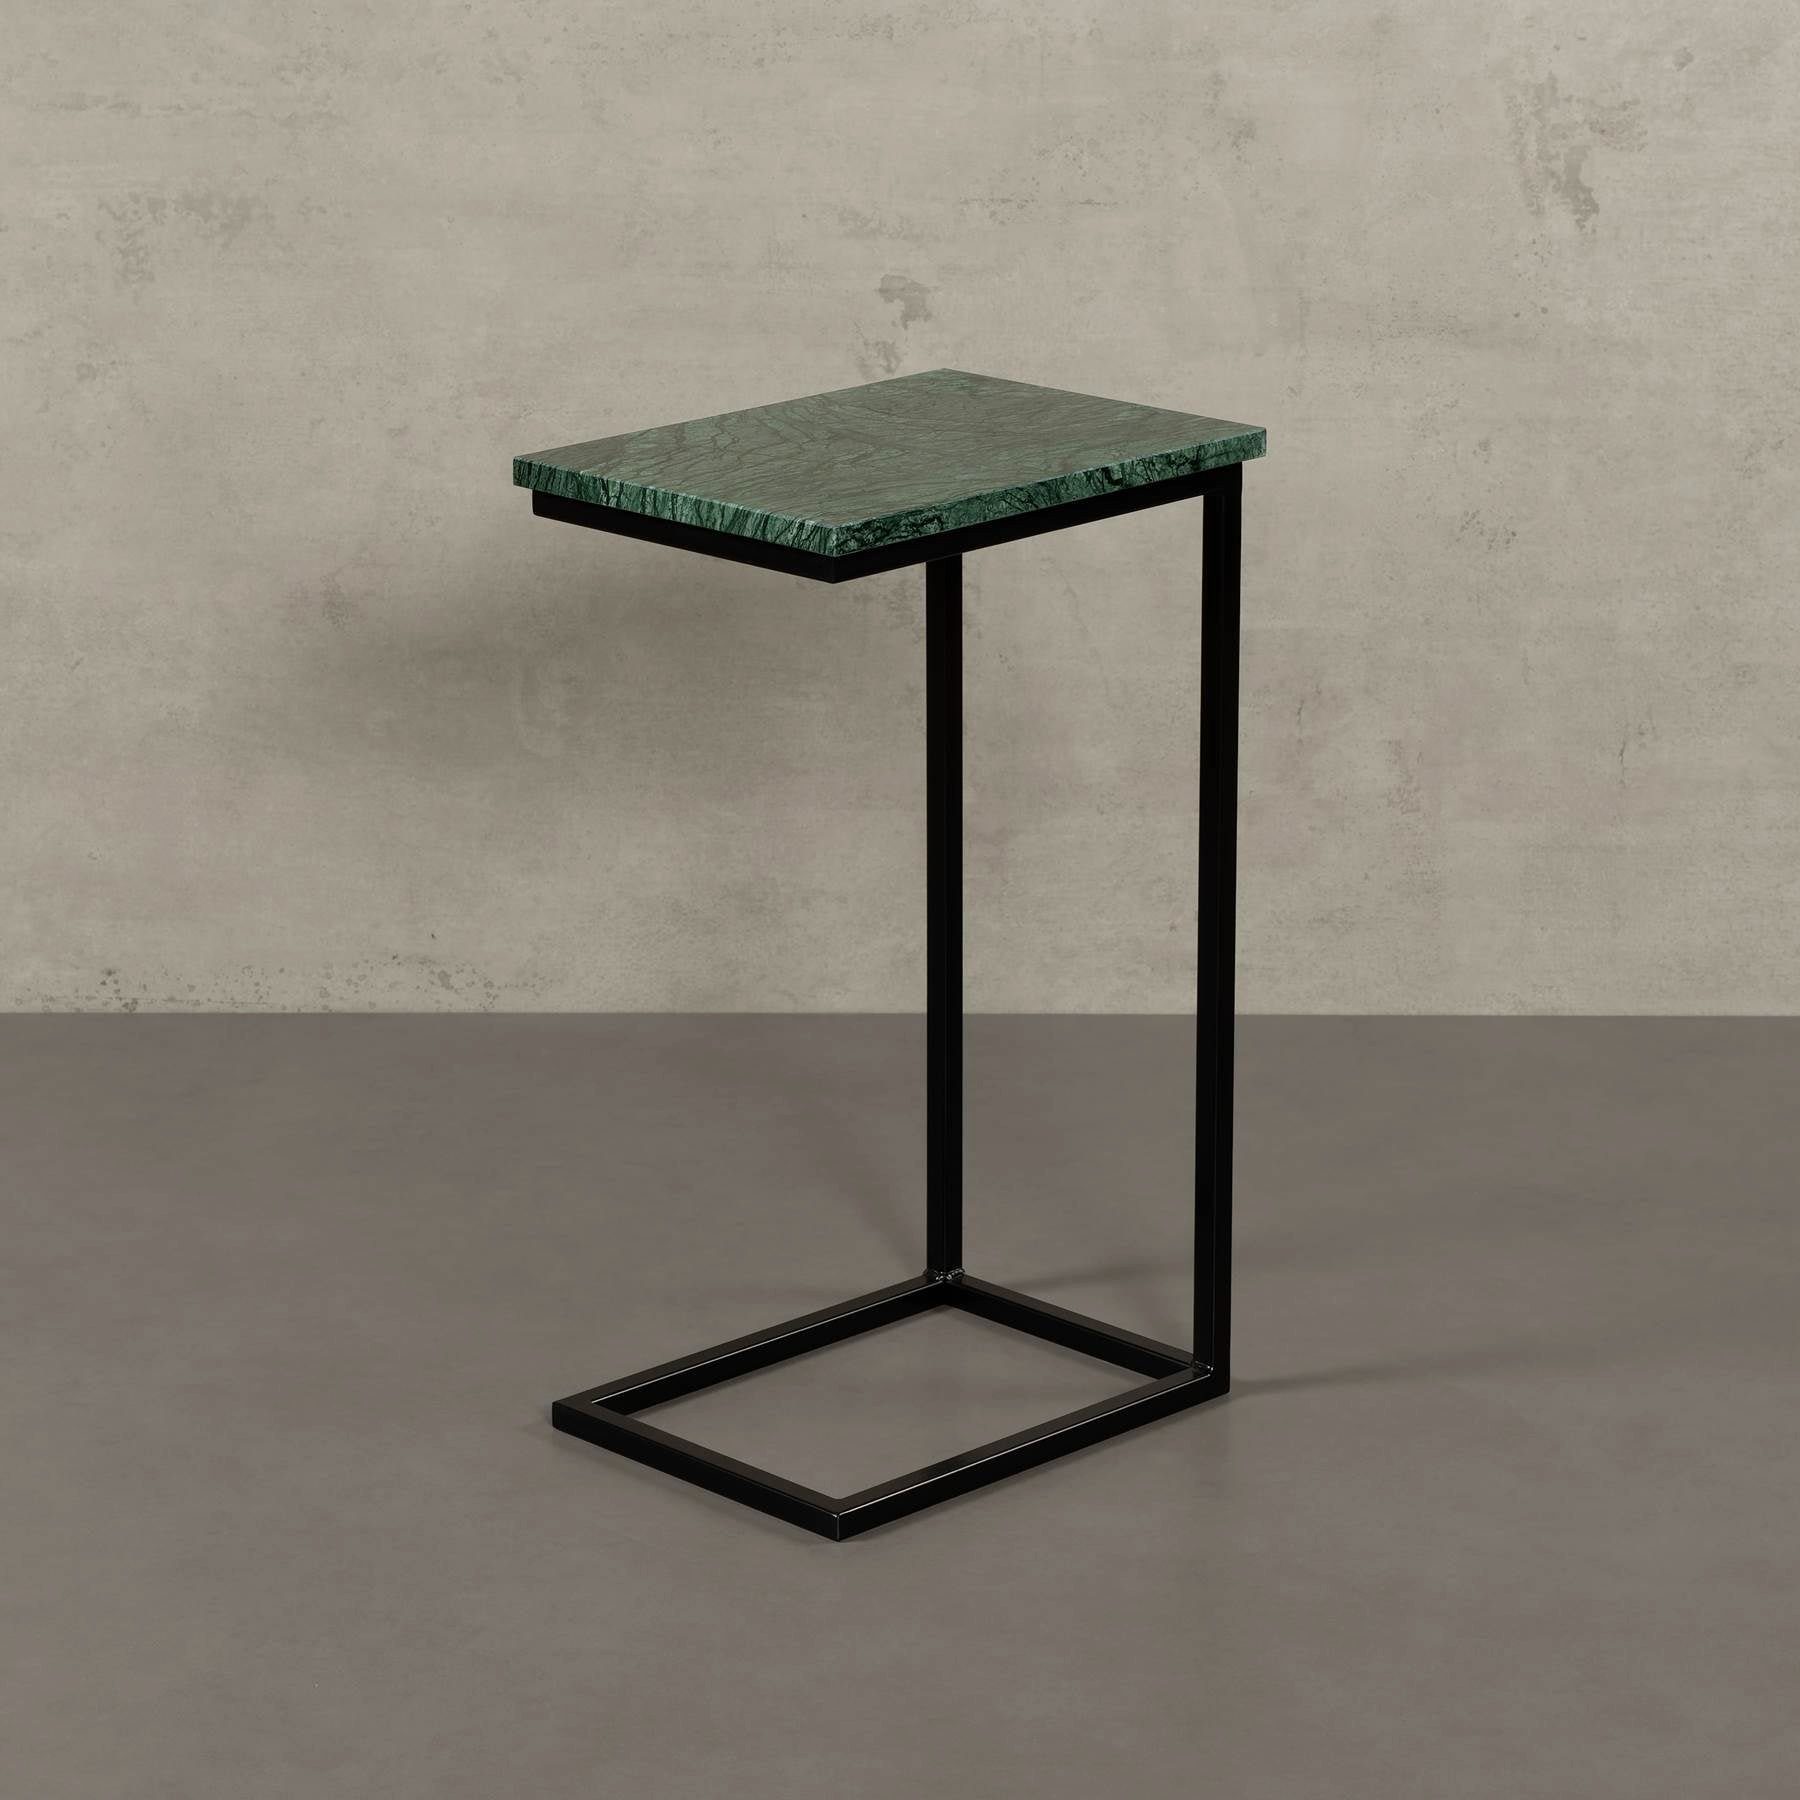 MAGNA Atelier Couchtisch STOCKHOLM mit ECHTEM MARMOR, Wohnzimmer Tisch eckig, Laptoptisch, schwarz Metallgestell, 40x30x68cm Verde Guatemala